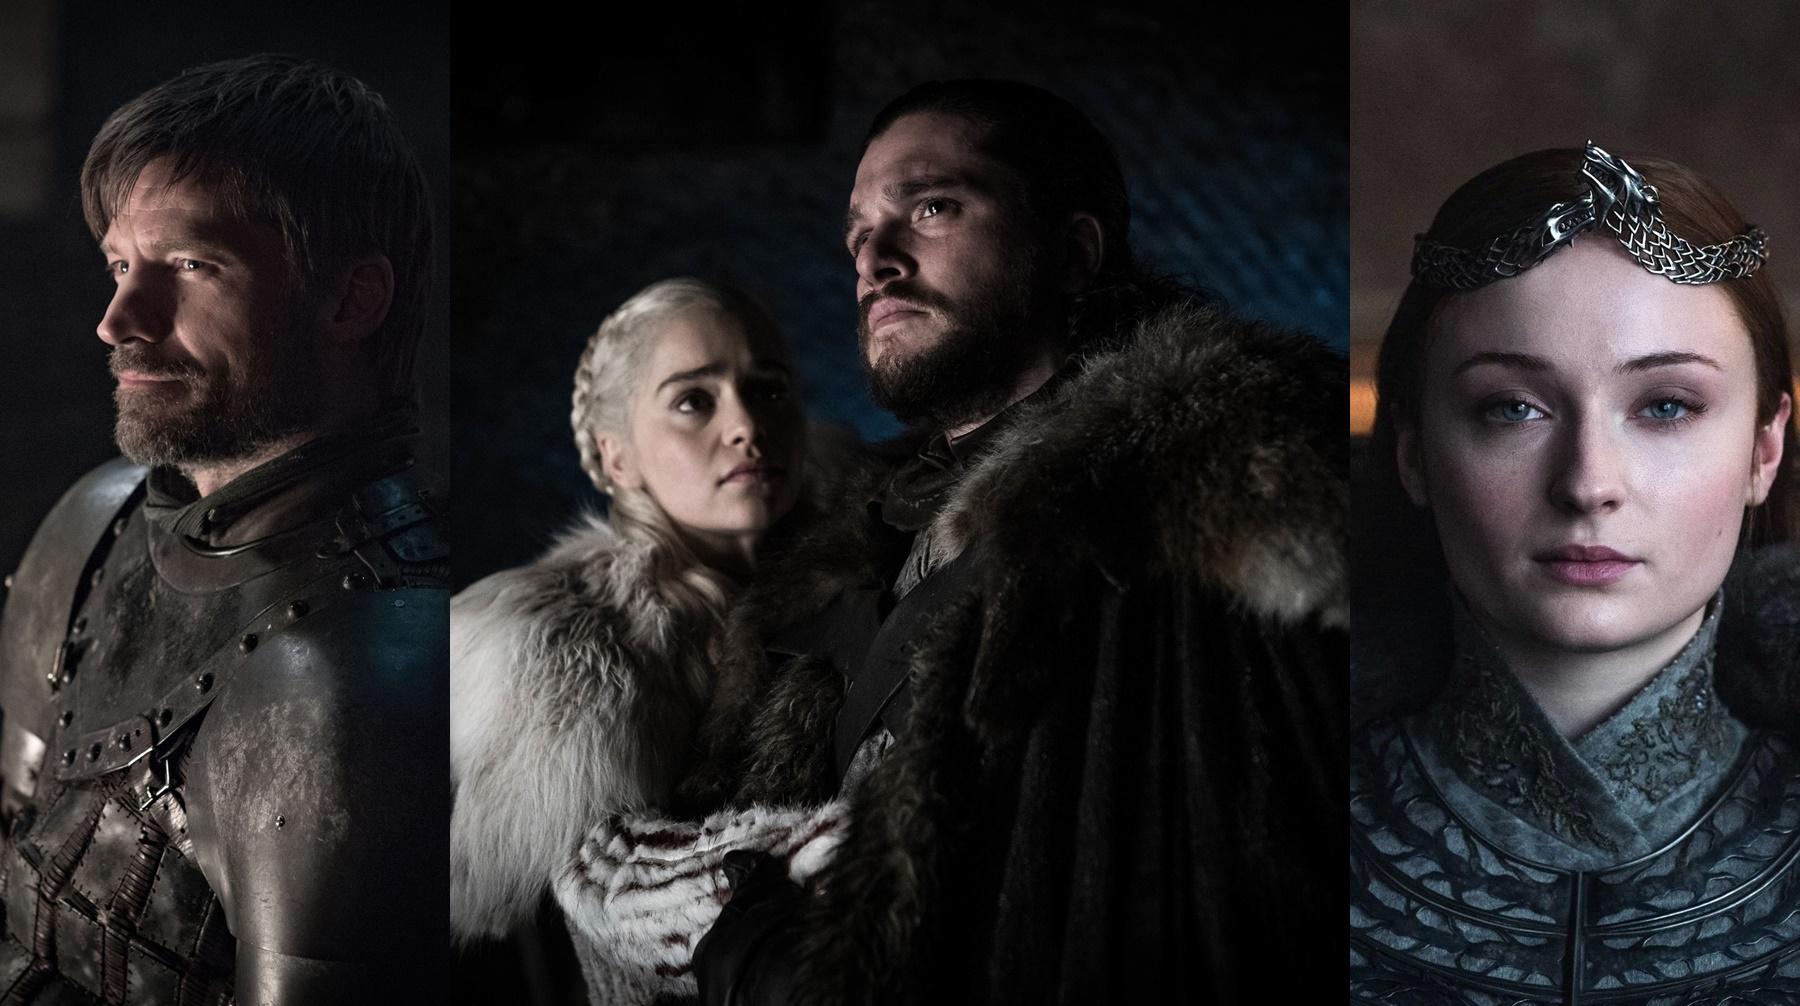 En el Emmy 2019, "Game of Thrones" consiguió nominaciones para todo su elenco principal, incluyendo Nikolaj Coster-Waldau, Emilia Clarke, Kit Harington y Sophie Turner. Fotos: HBO.